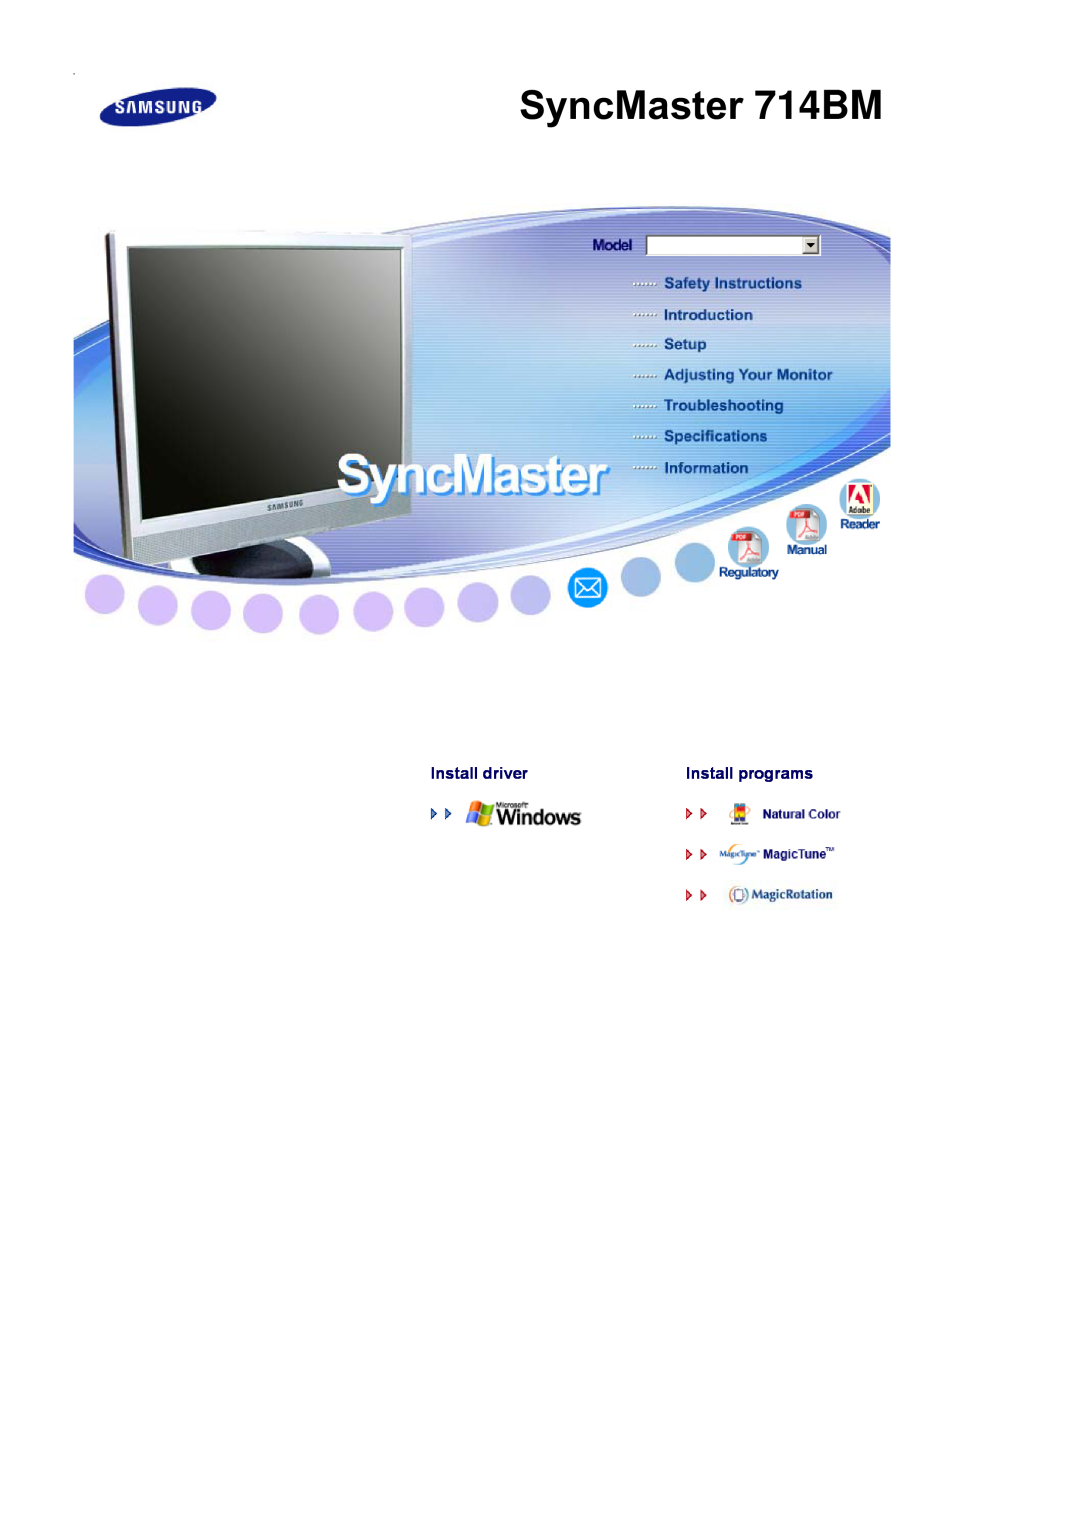 Samsung manual SyncMaster 714BM, Install driver, Install programs 